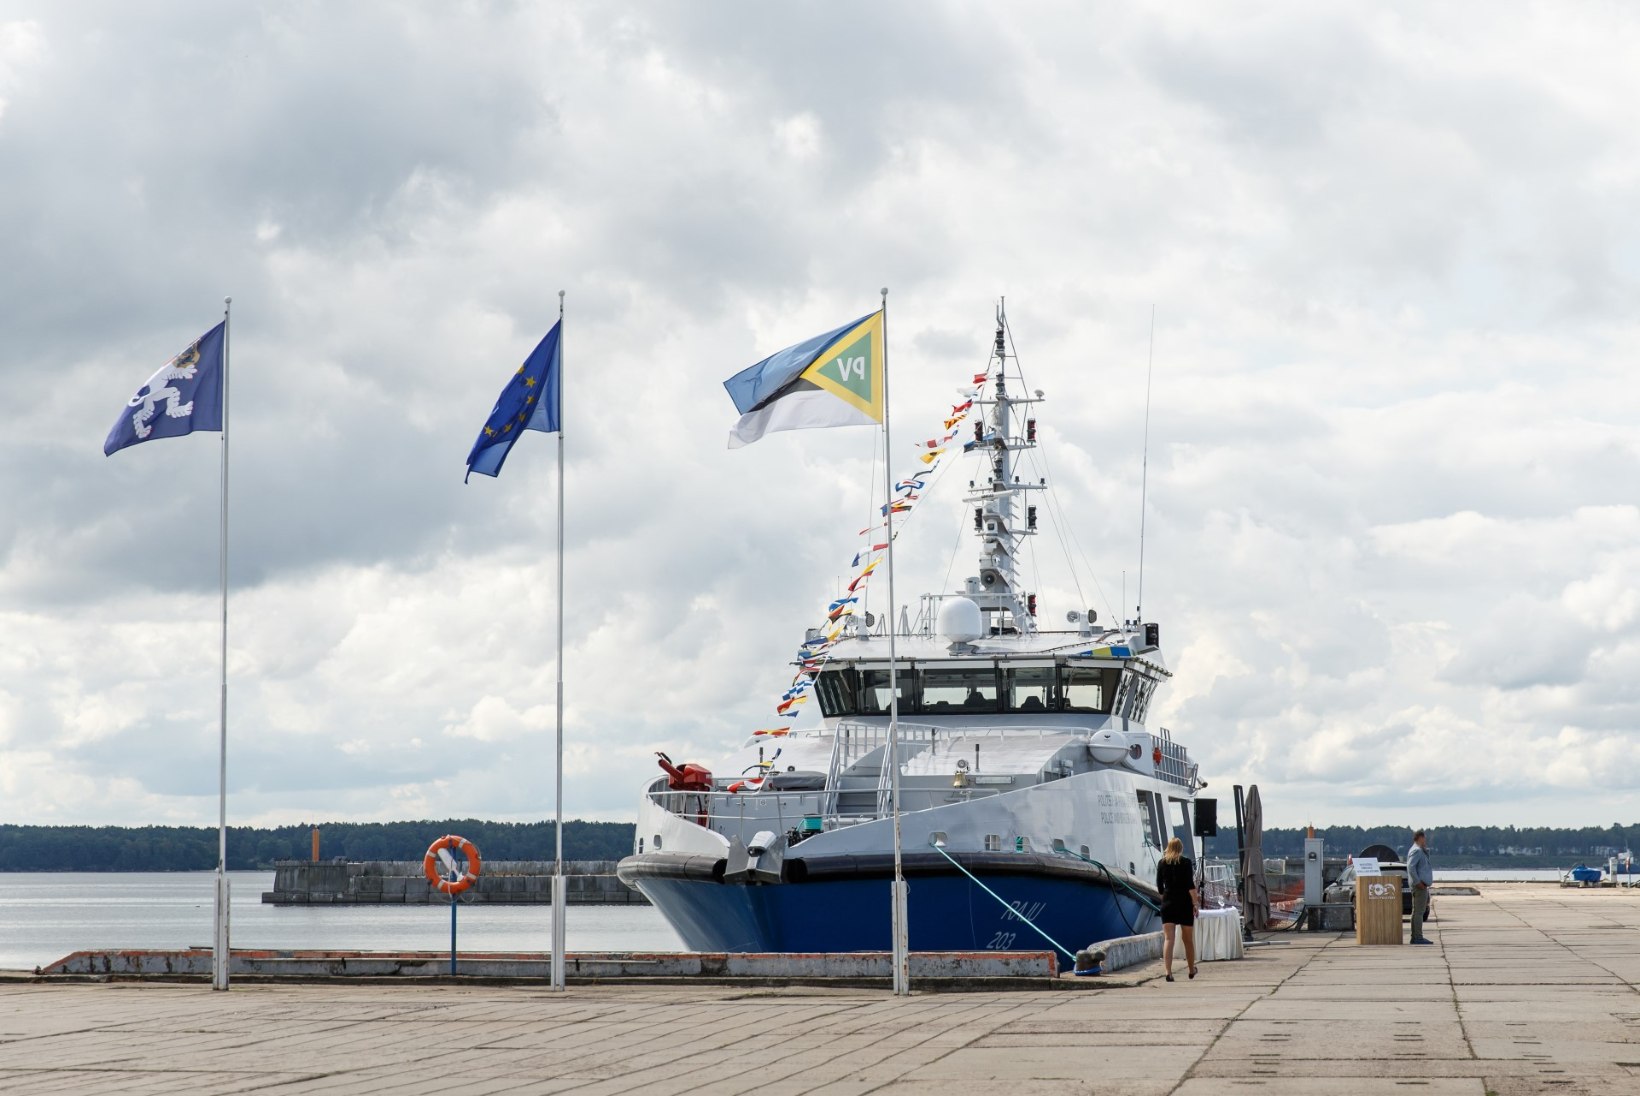 ÕL VIDEO JA GALERII | President uudistas piriivalve uut patrull-laeva